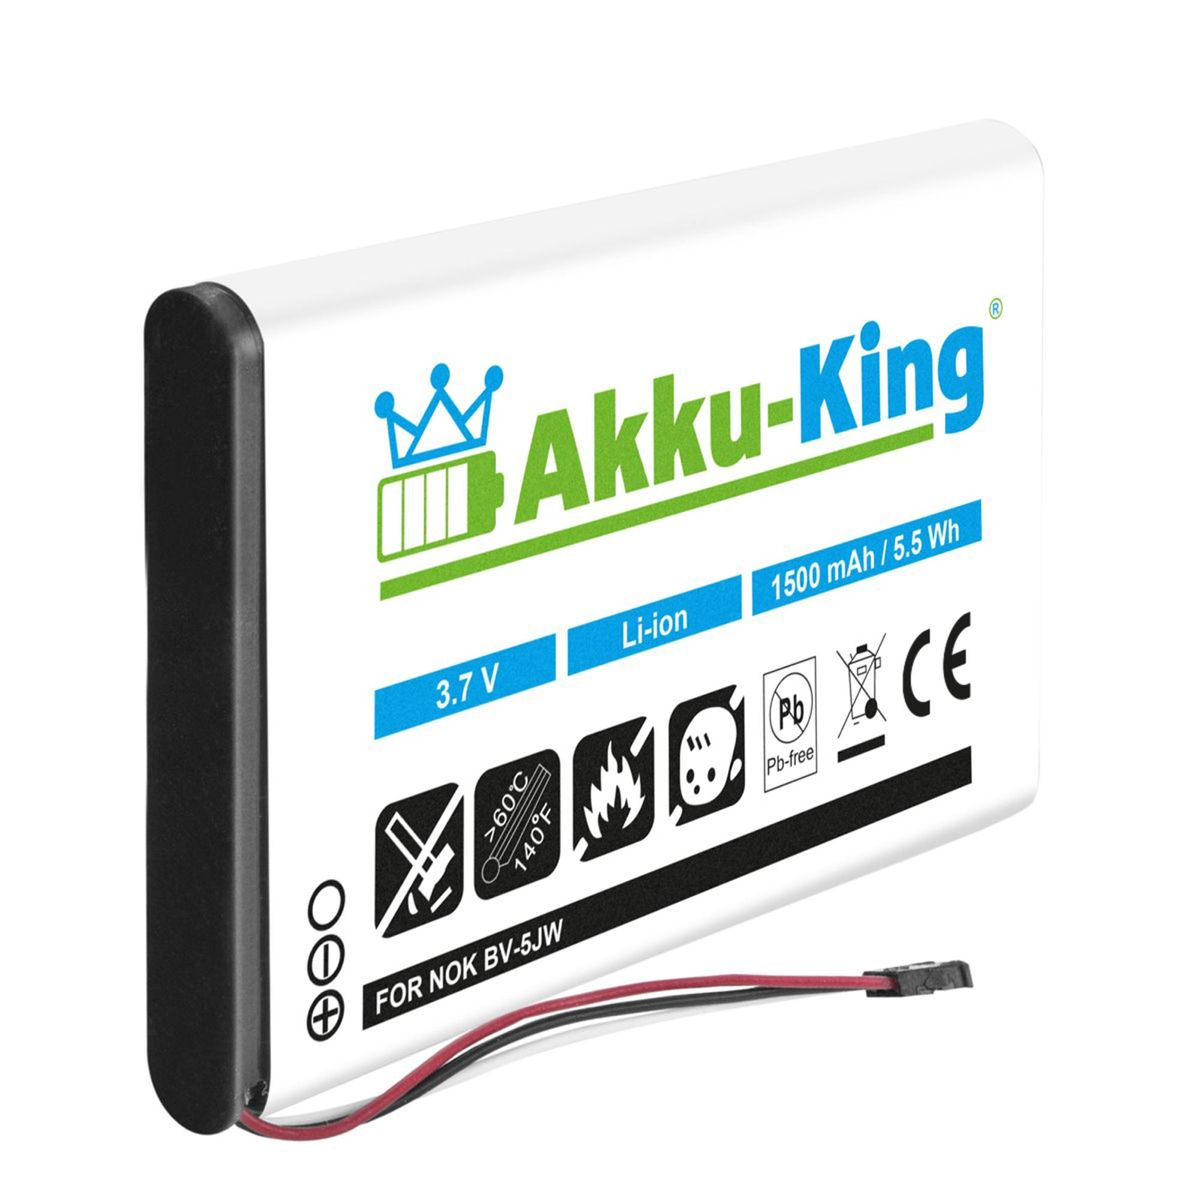 AKKU-KING Akku kompatibel mit Nokia Li-Ion 1500mAh 3.8 Handy-Akku, Volt, BV-5JW